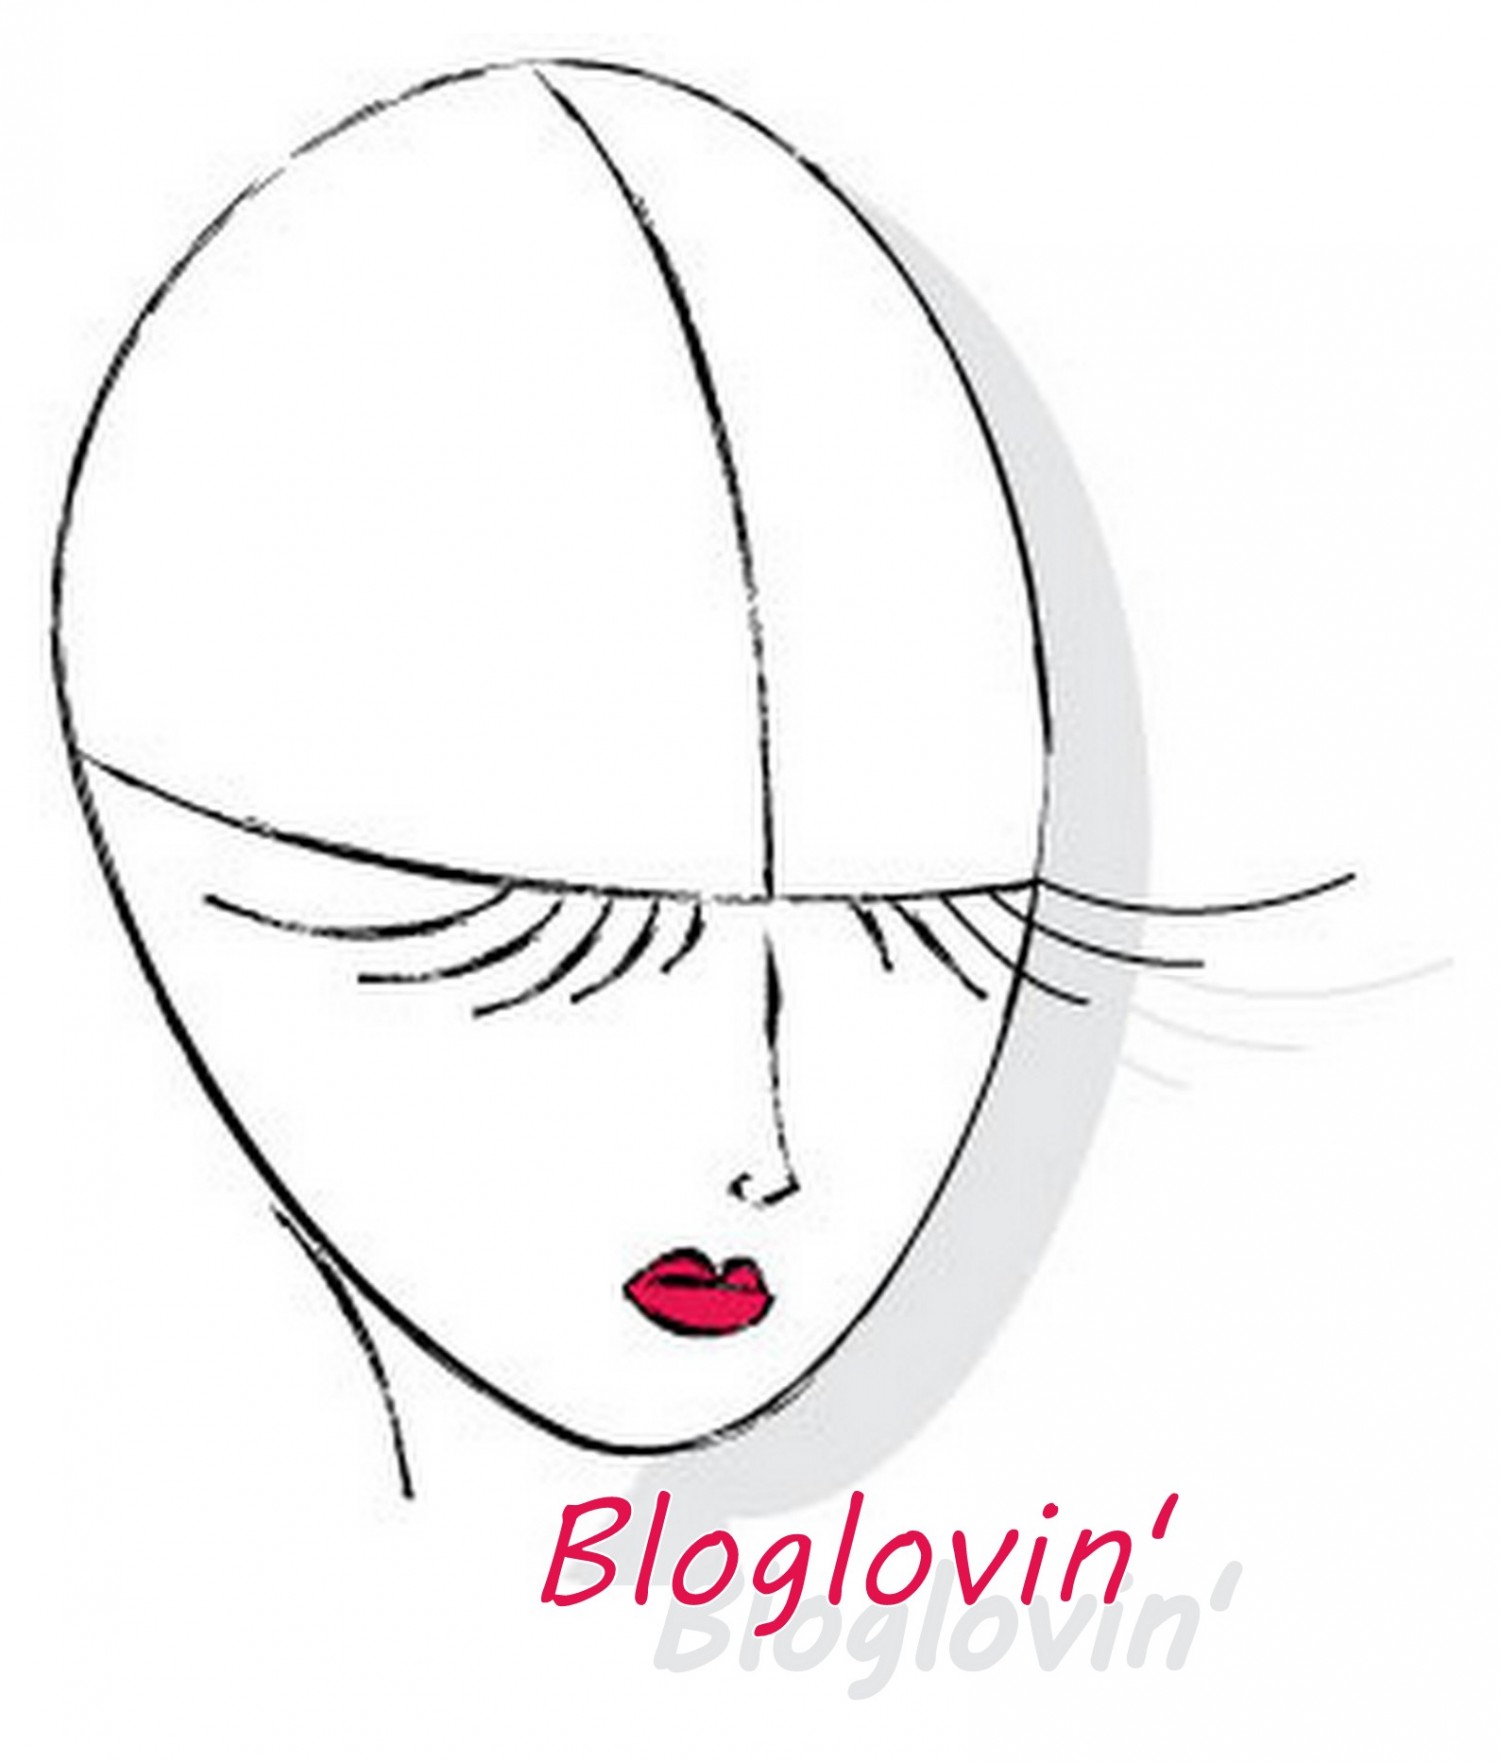 bloglovin-2